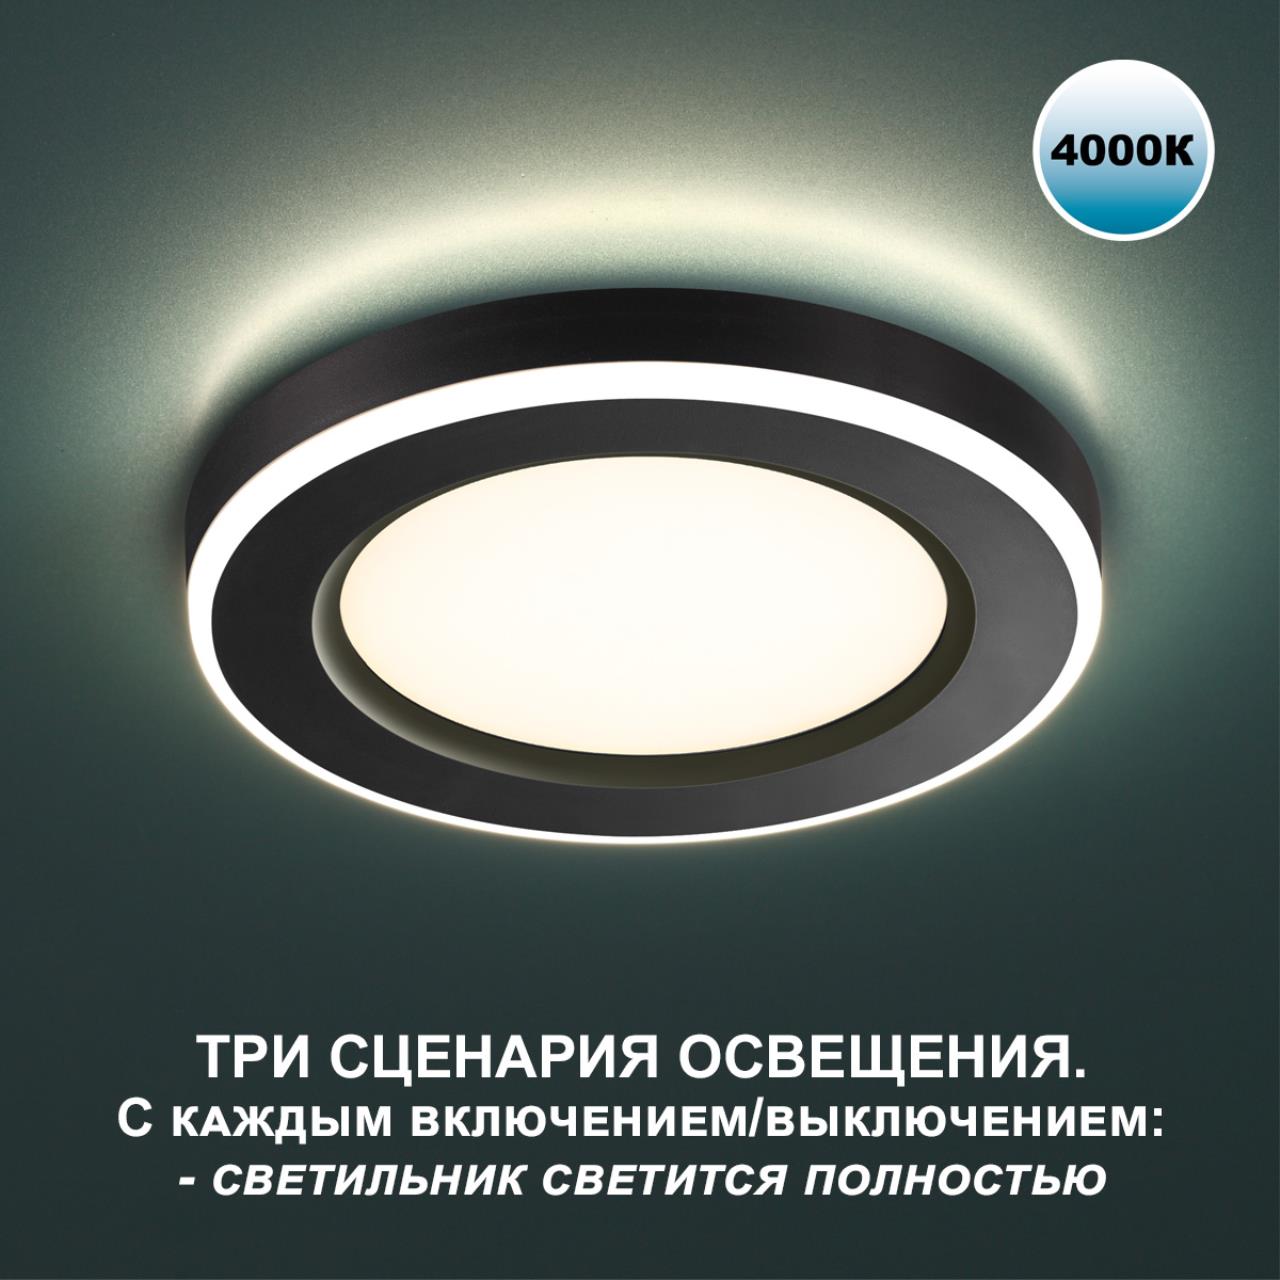 Трёхрежимный встраиваемый светодиодный светильник Novotech SPAN 359013